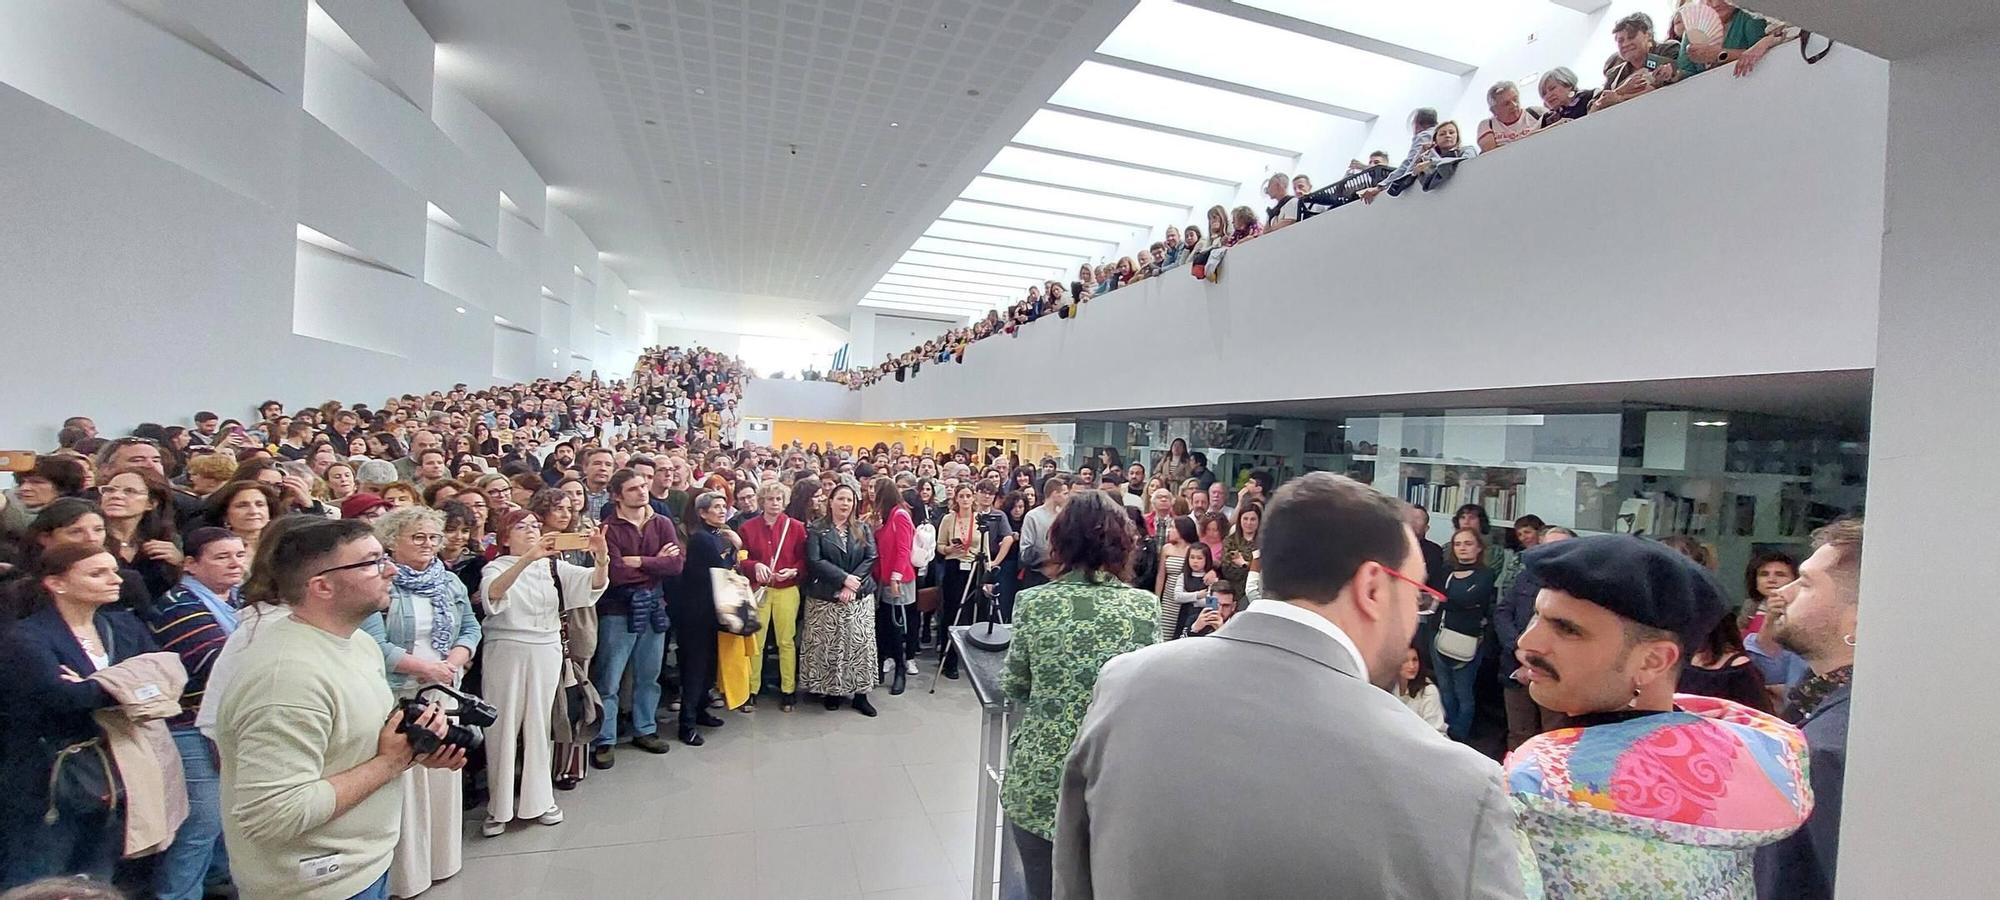 En imágenes: Así fue la inauguración de la exposición de Rodrigo Cuevas en la Laboral Centro de Arte